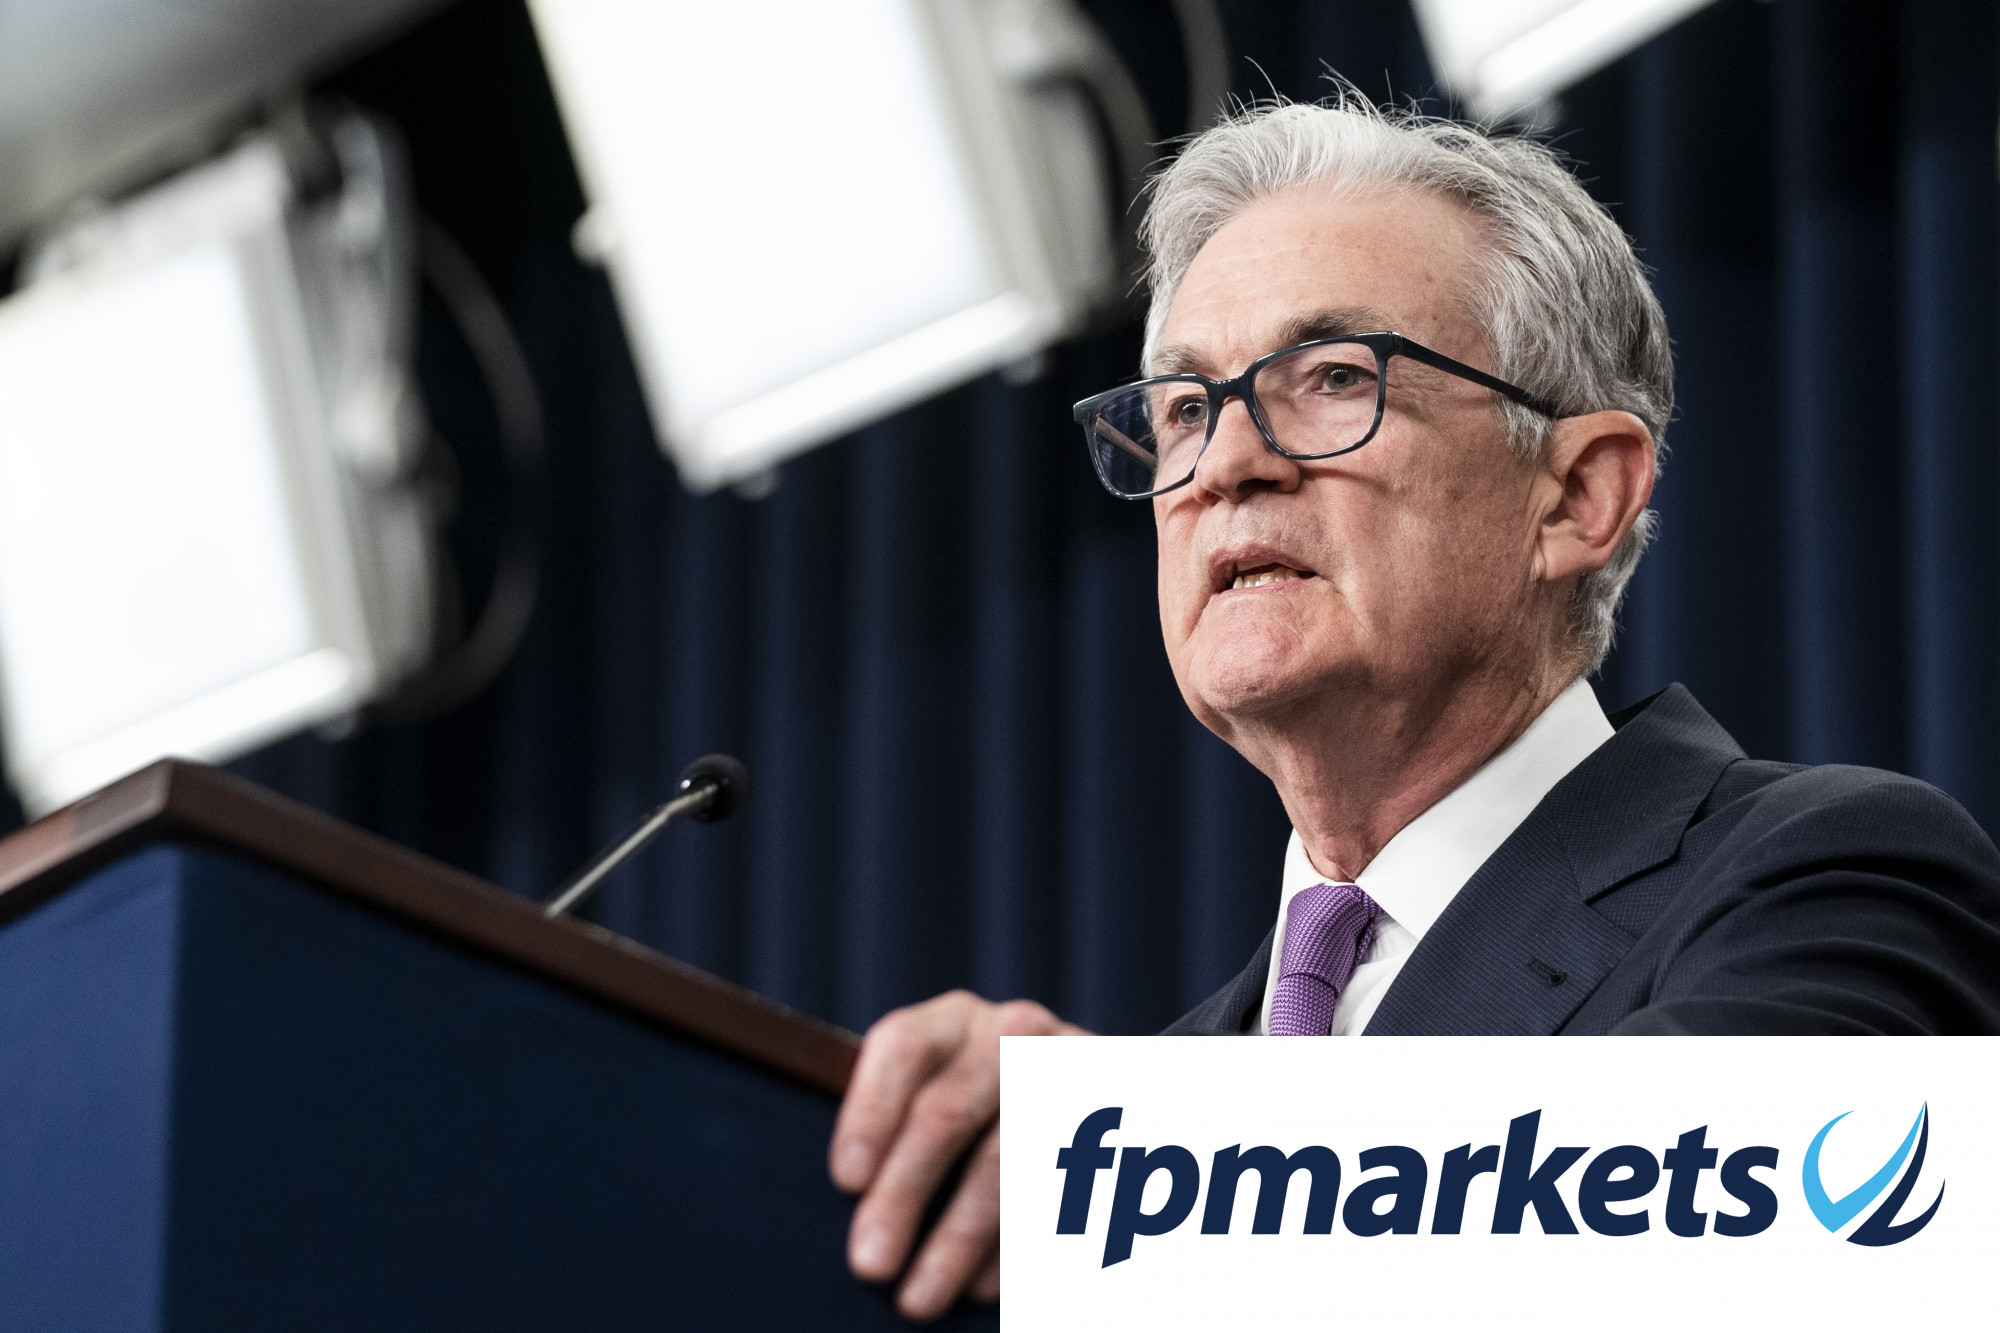 Nhận định về Fed trước thềm FOMC - Điều gì đang chờ đợi DXY và giá vàng